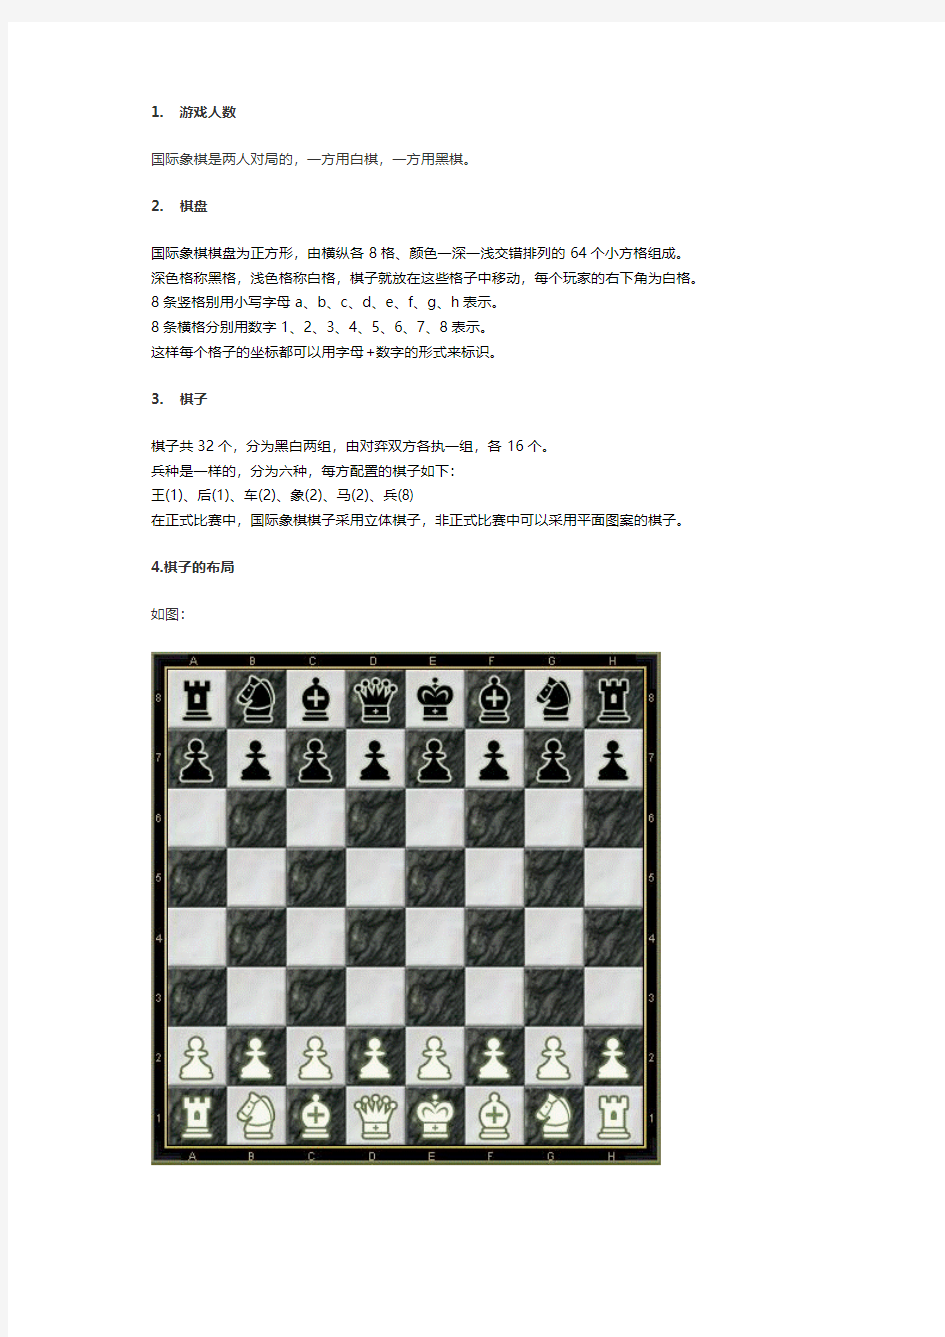 国际象棋规则(图解)